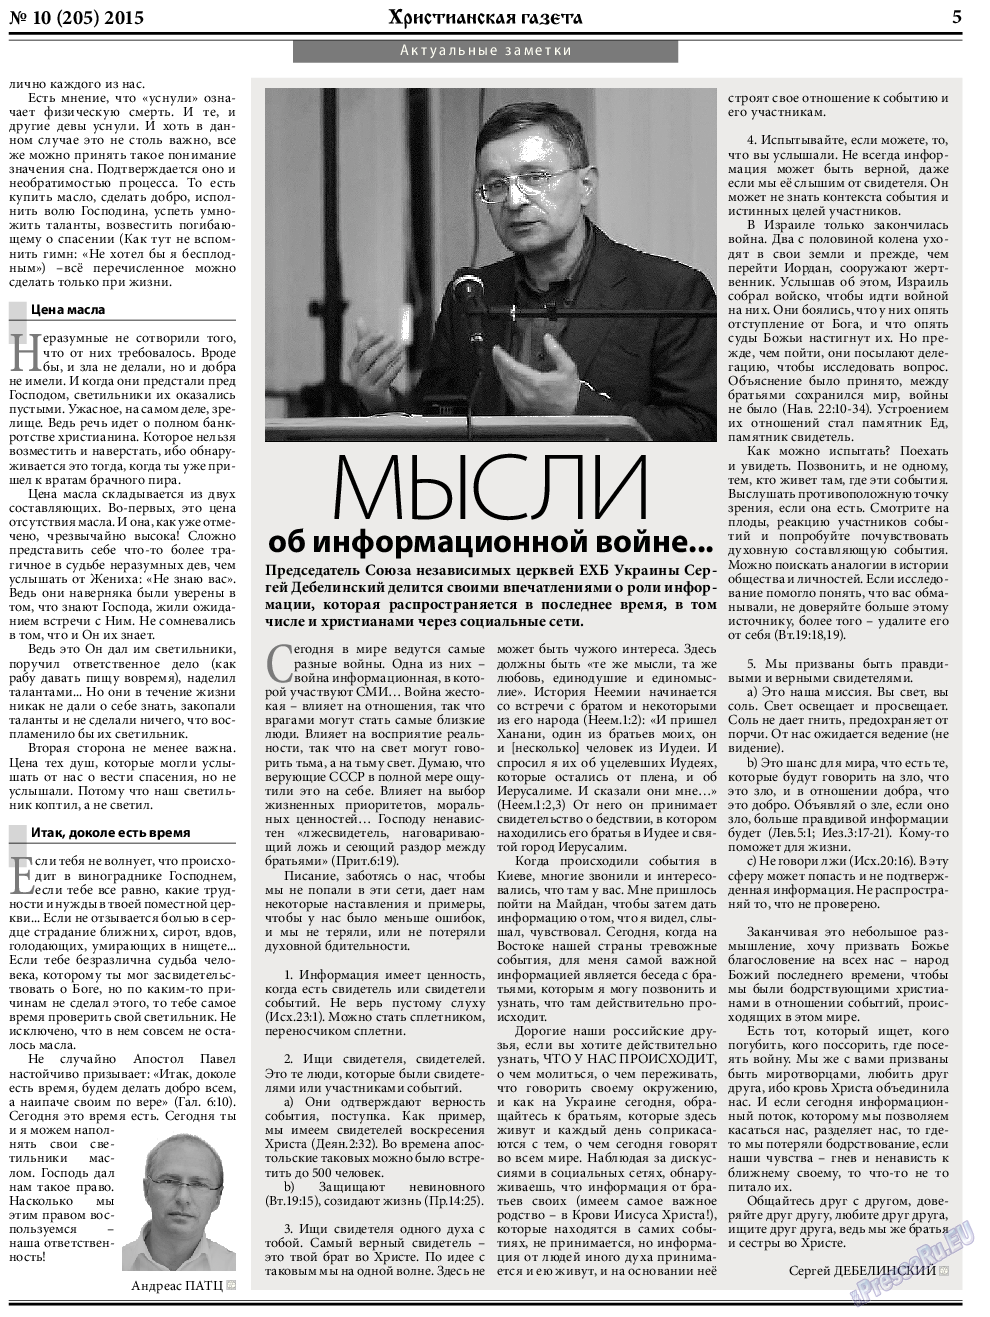 Христианская газета, газета. 2015 №10 стр.5